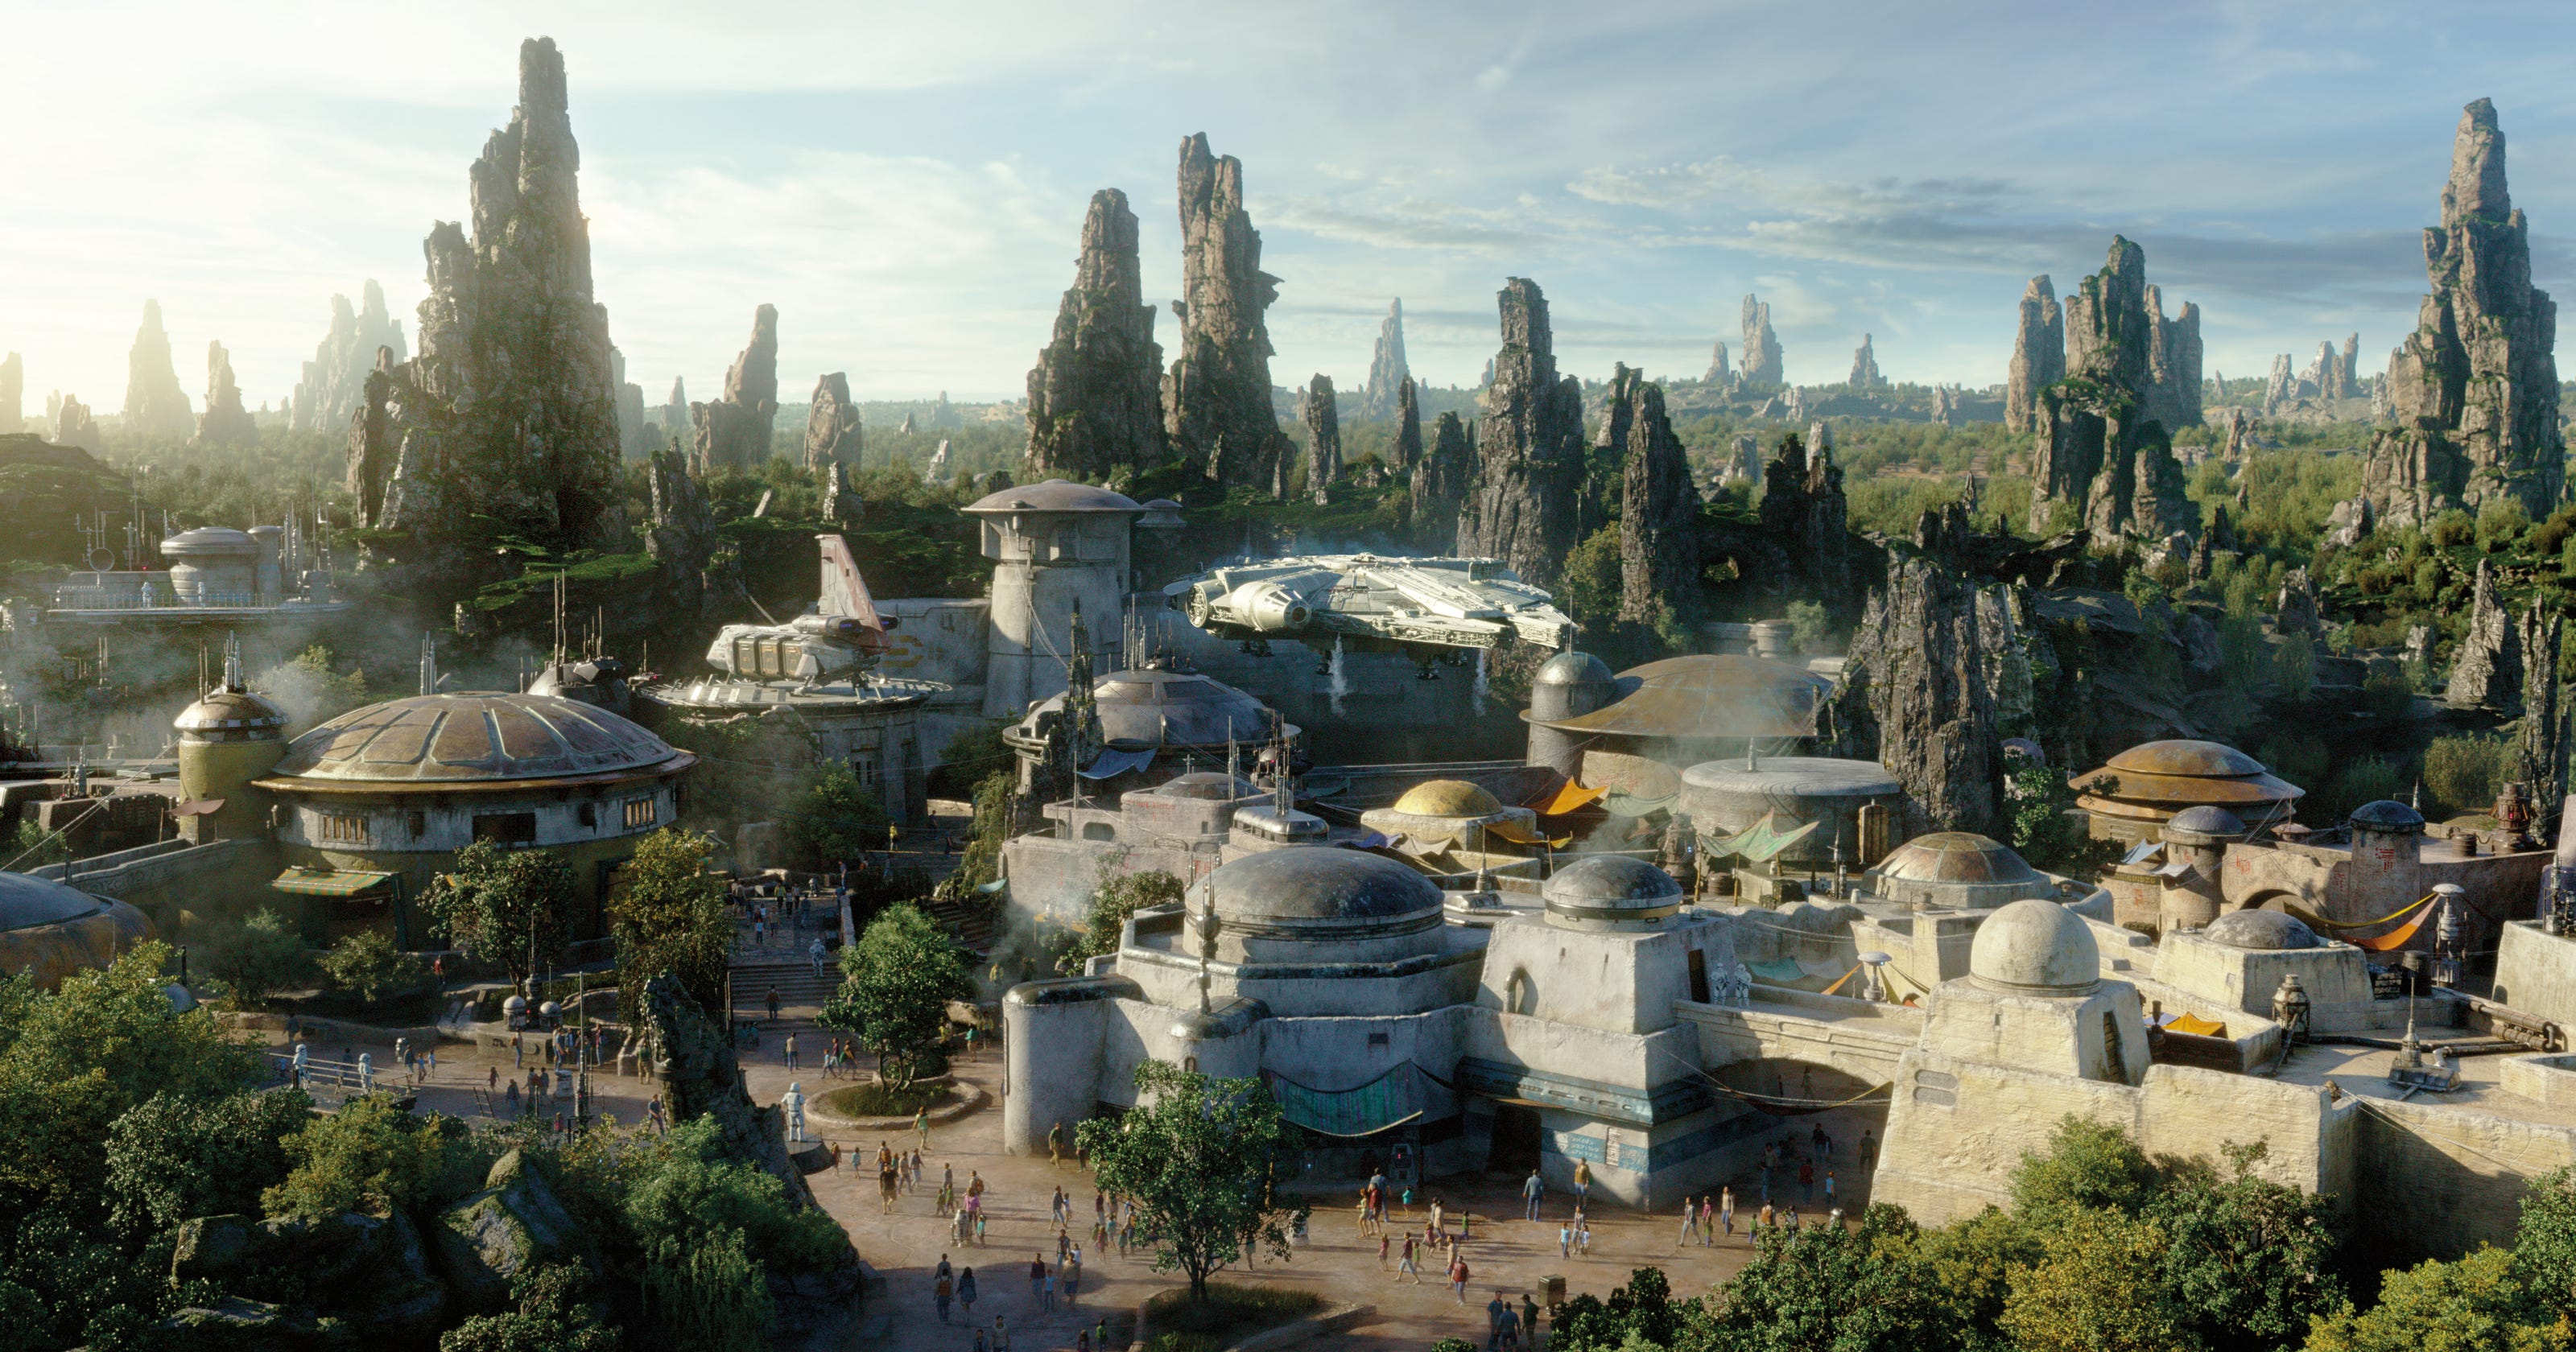 Star Wars Land at Disney in Orlando: Travel to a galaxy far, far away